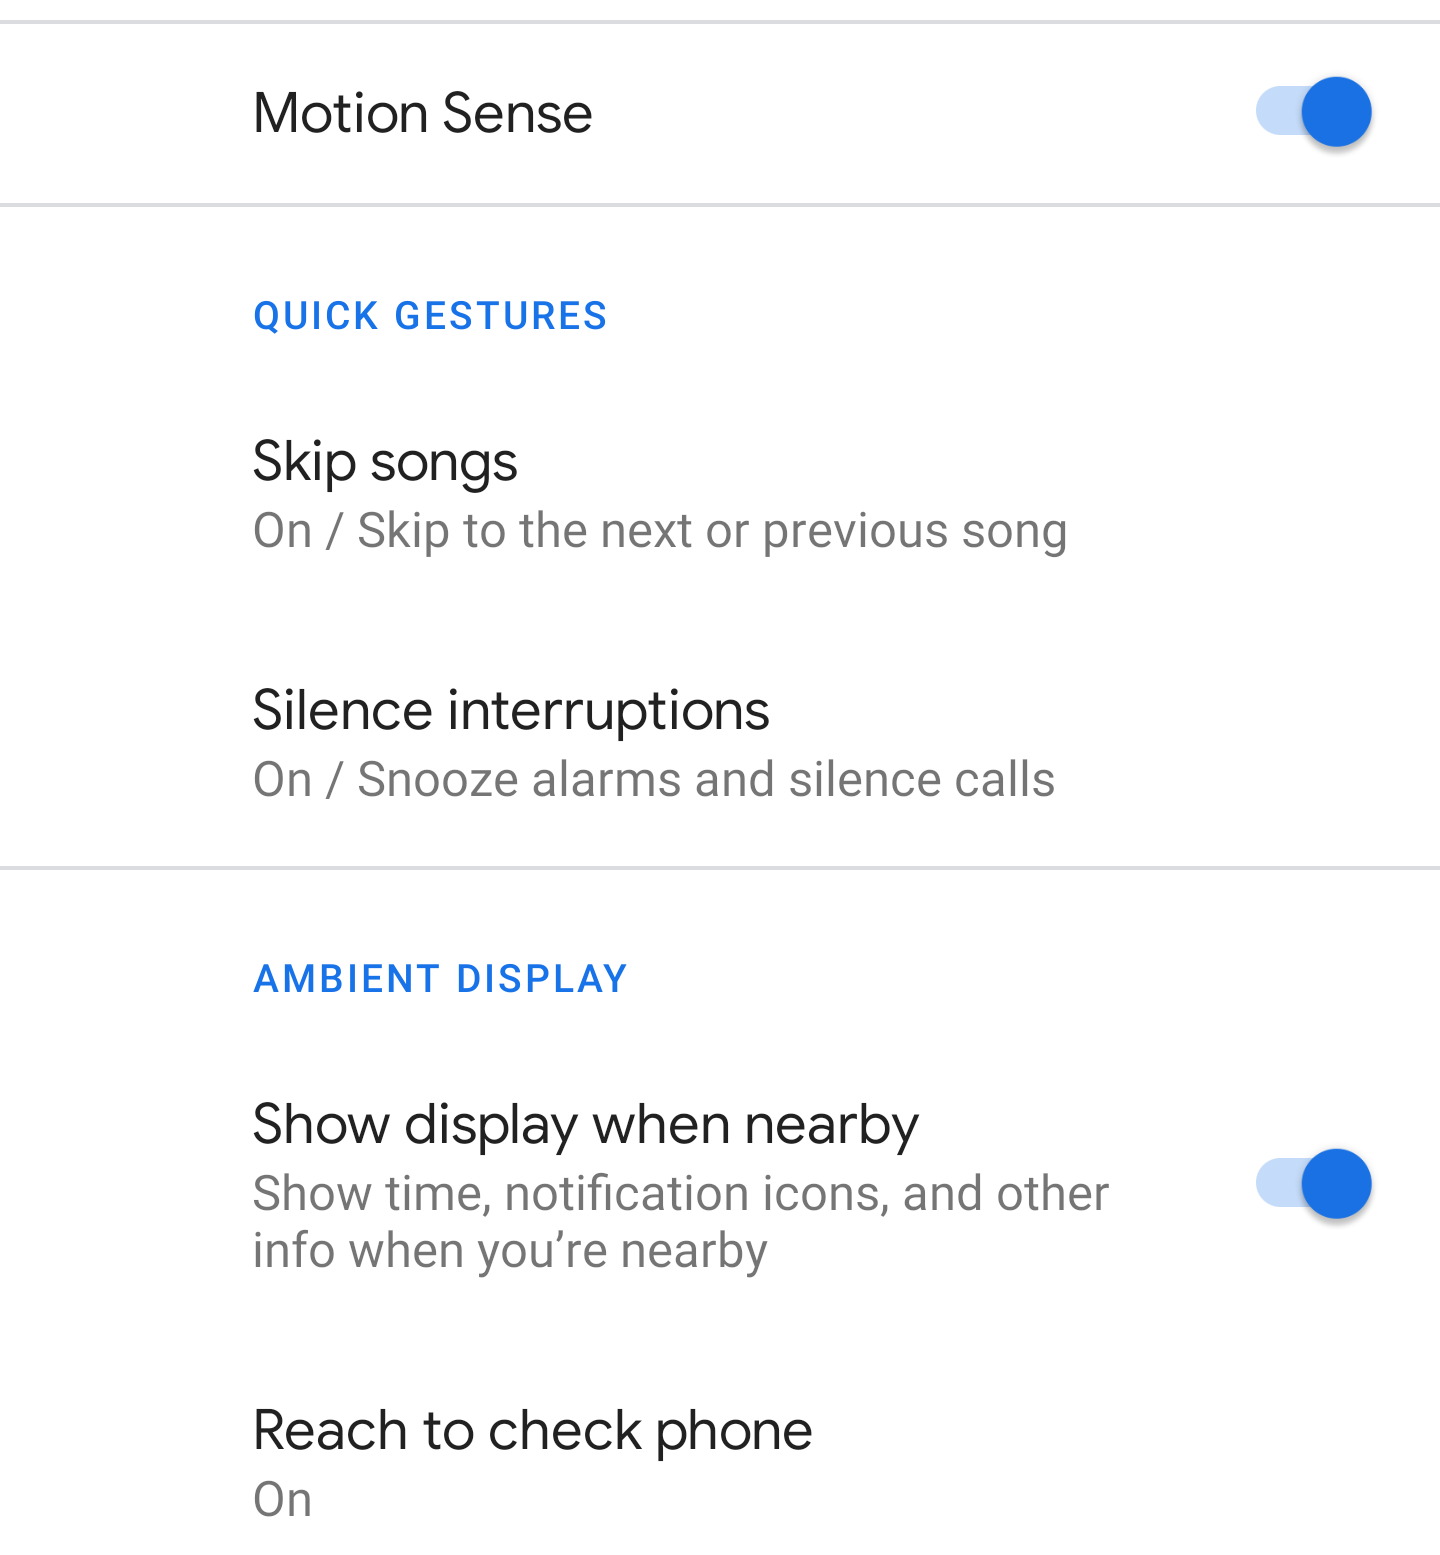 Motion Sense features